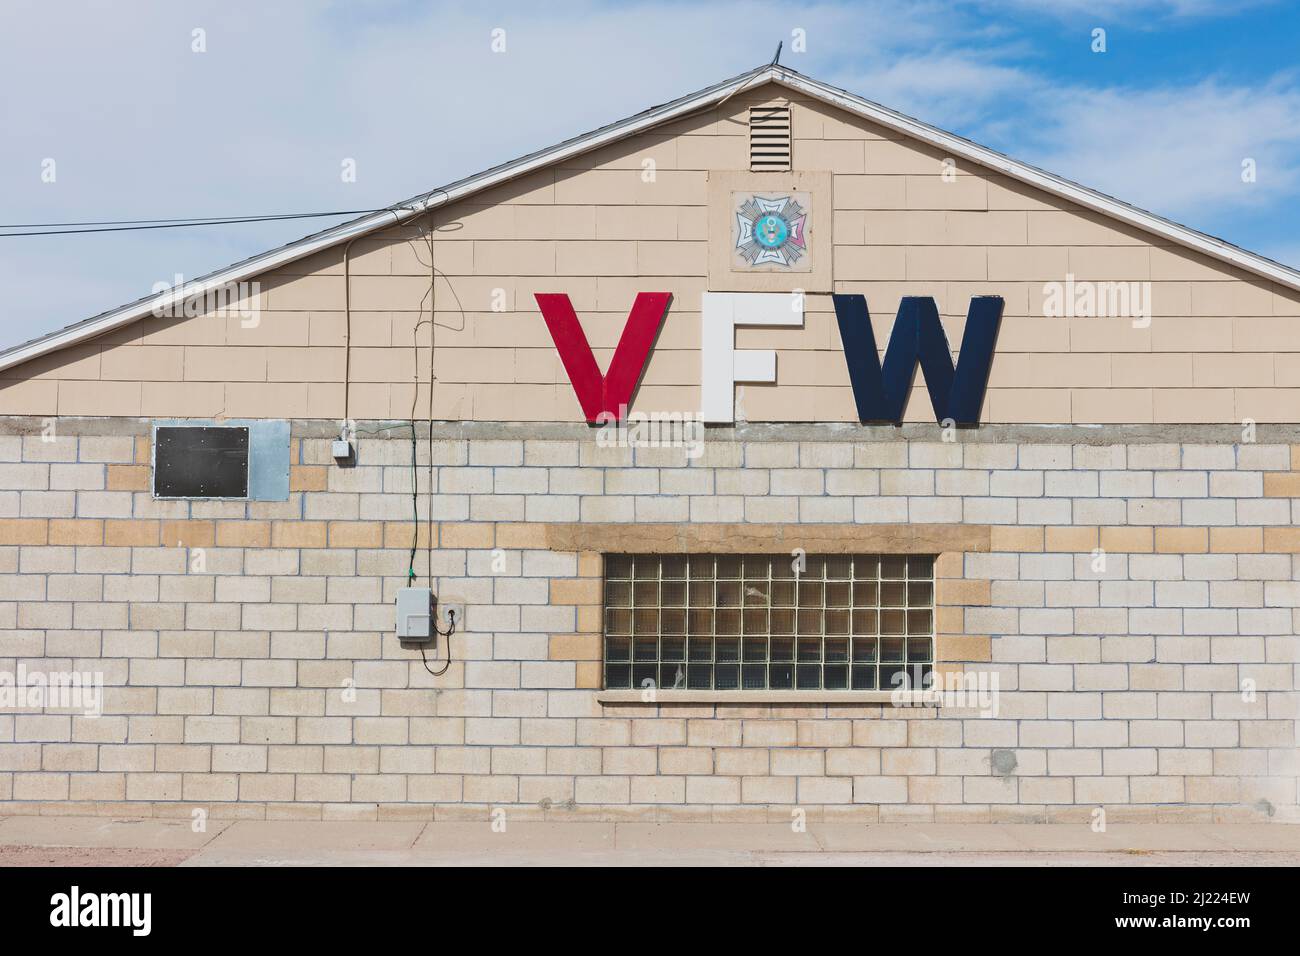 Bâtiment VFW, l'organisation des anciens combattants des guerres étrangères, signe et fenêtre. Banque D'Images